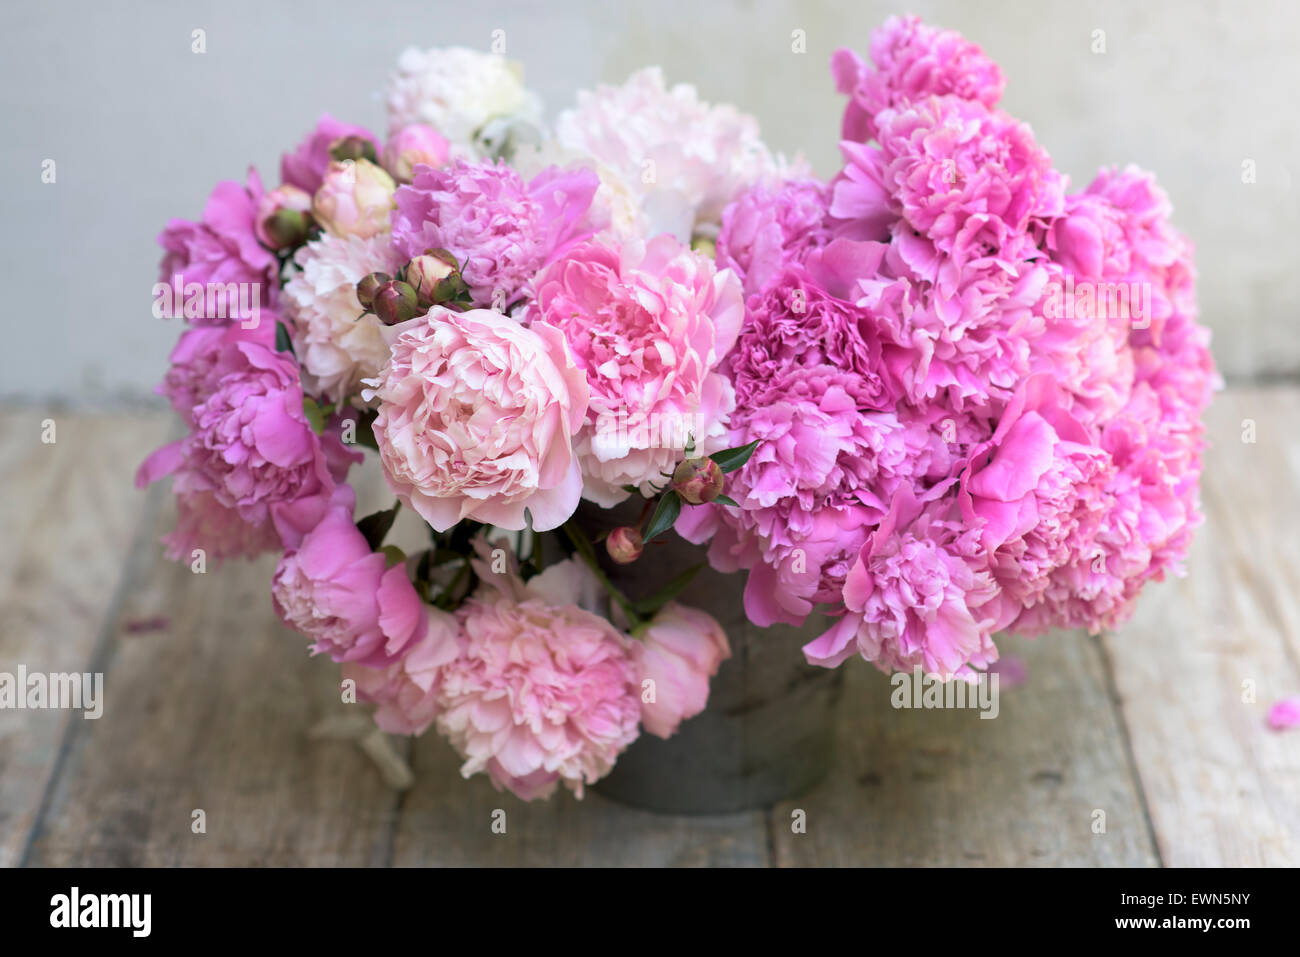 Bouquet de peonías rosadas y blancas mezcladas en el contenedor Foto de stock